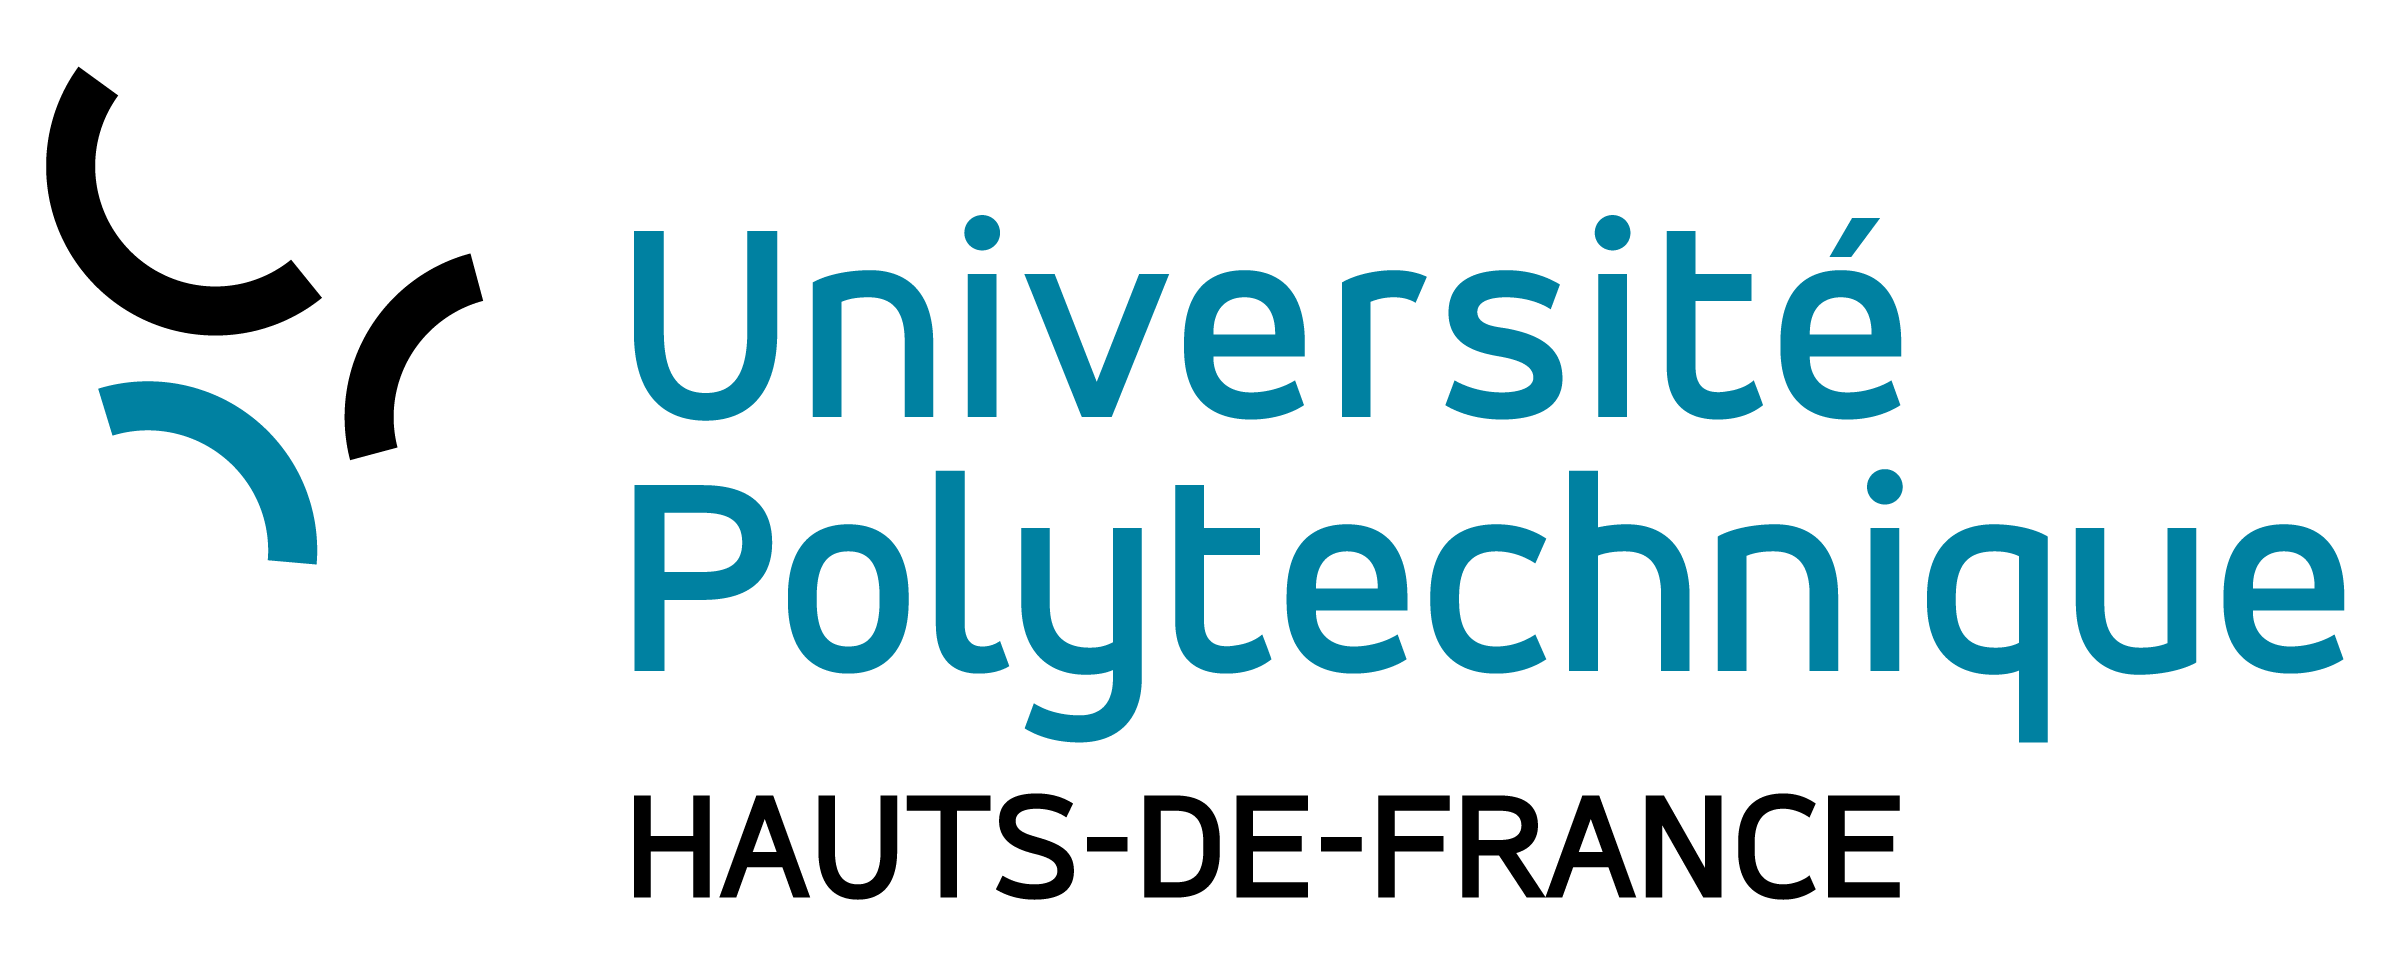 Université Polytechnique des Hauts-de-France
Master Mathématiques